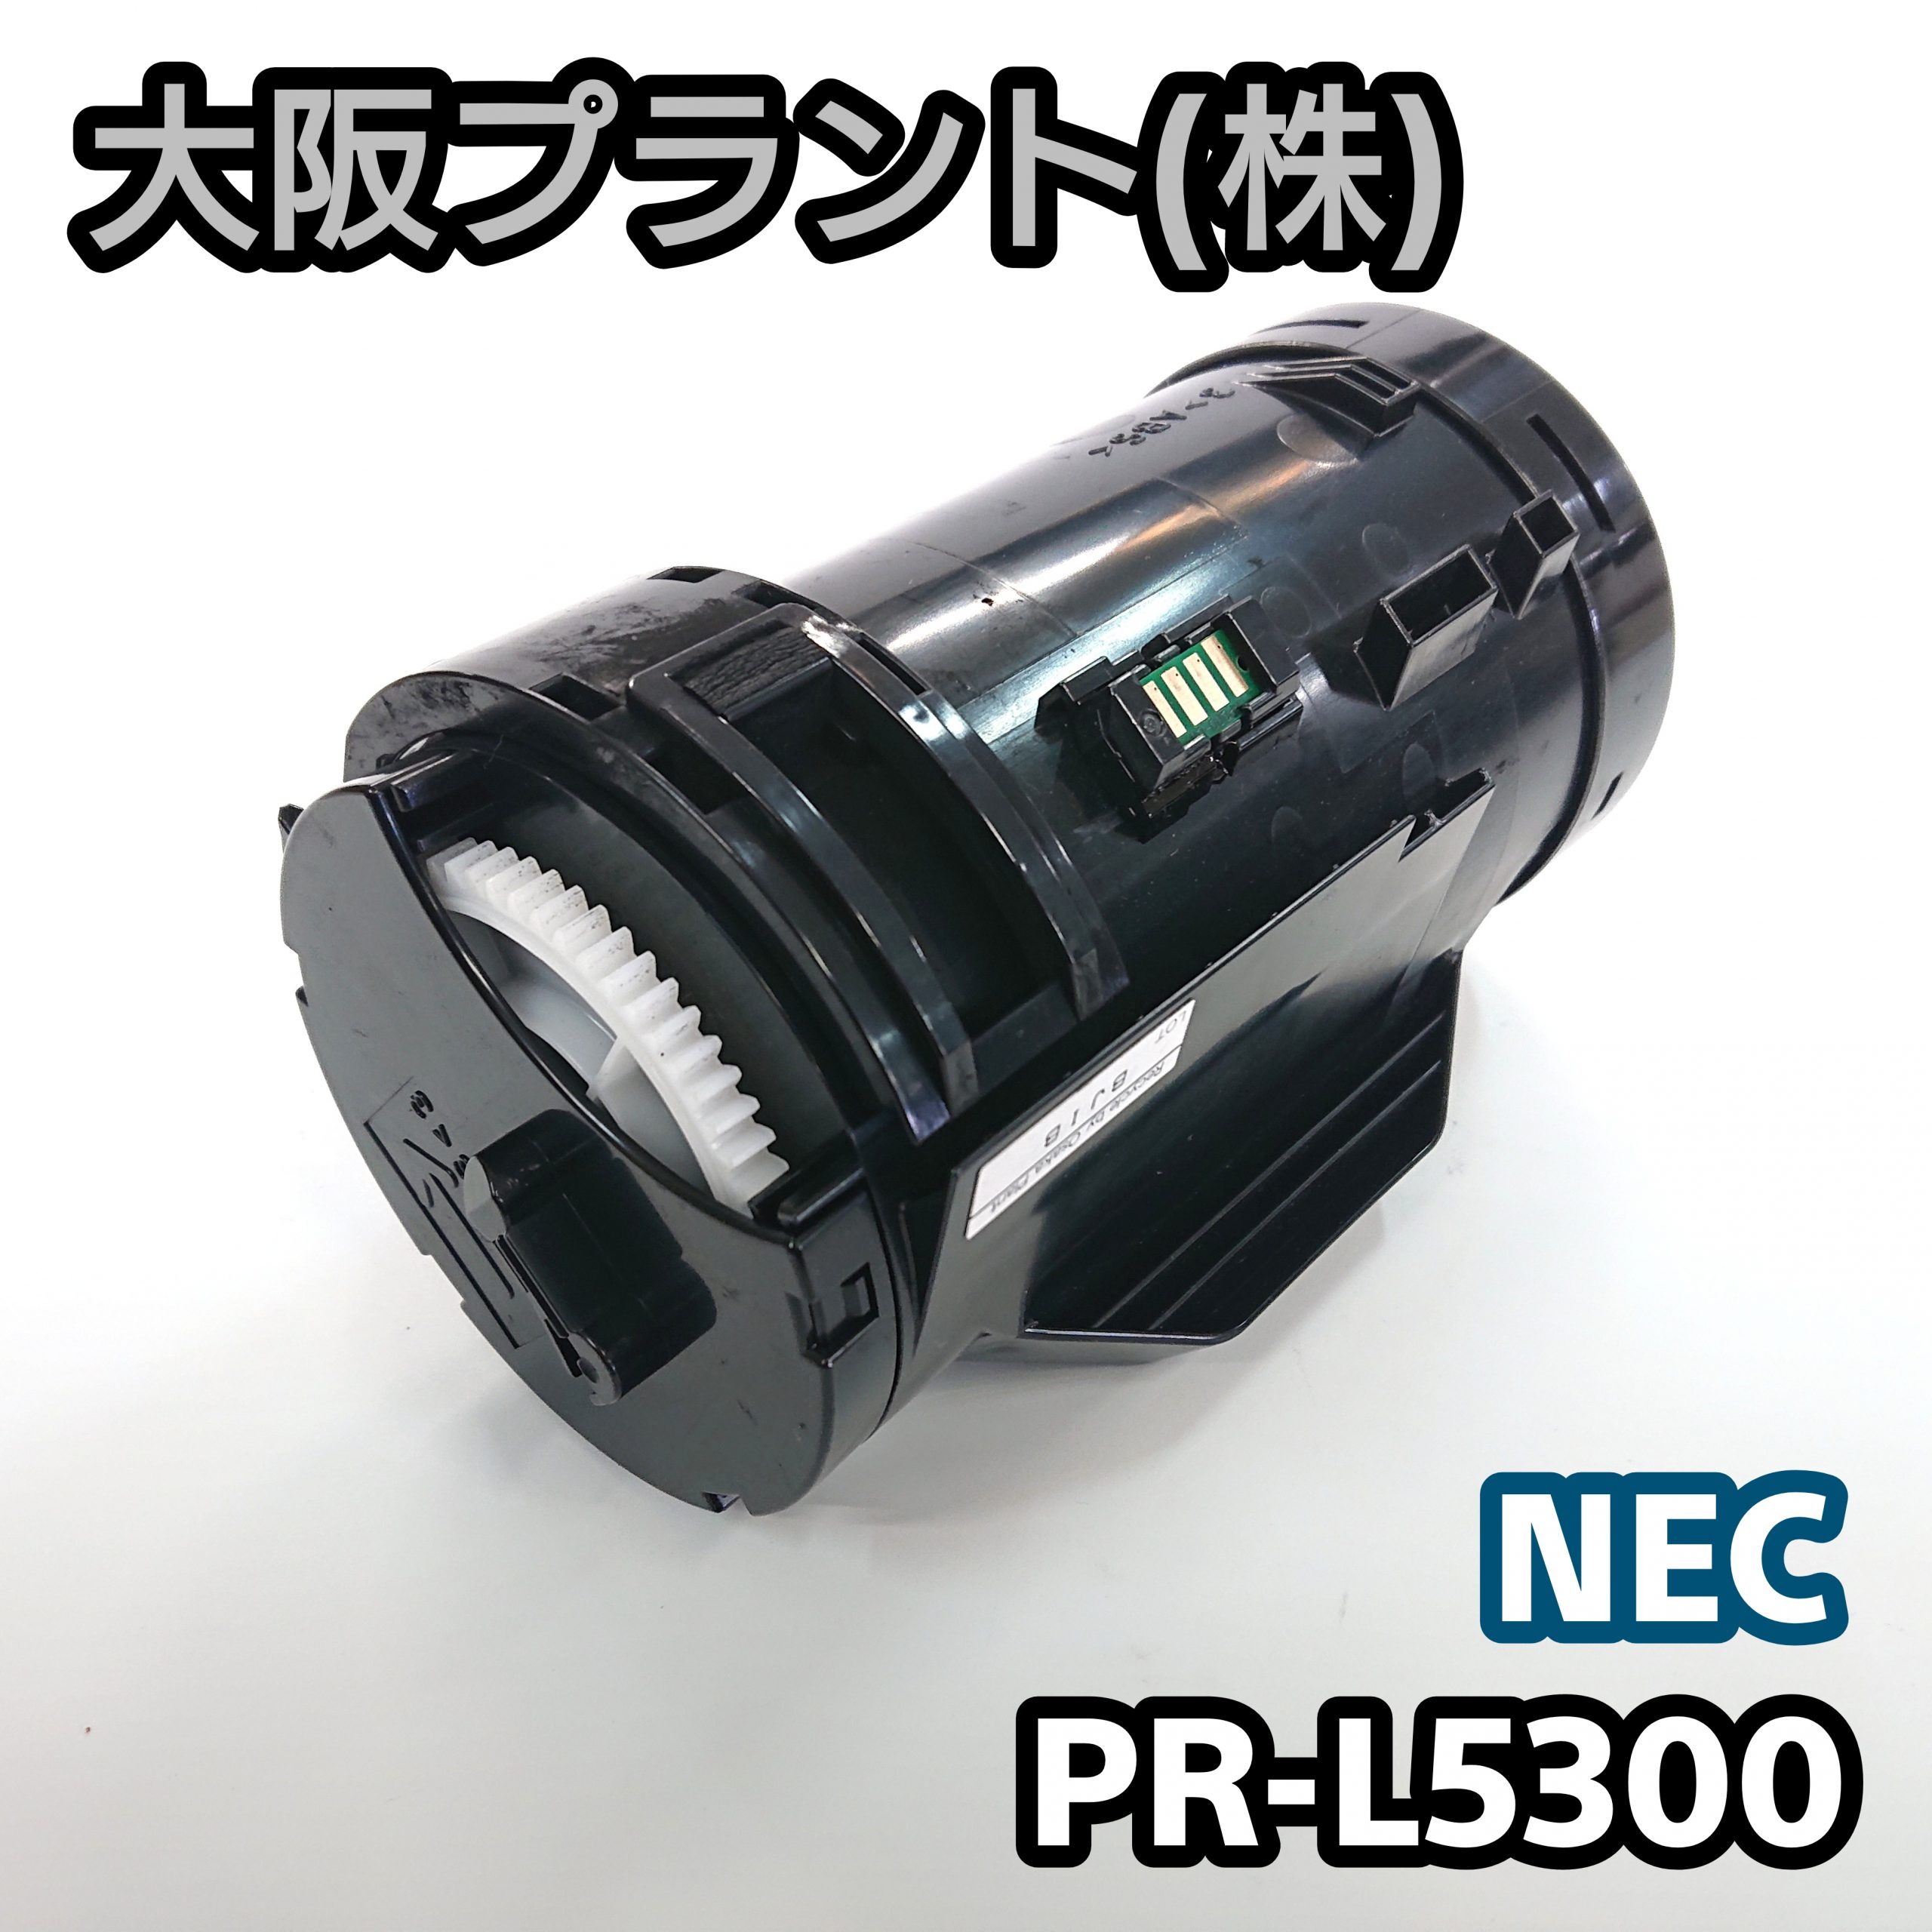 NEC PR-L5300-12